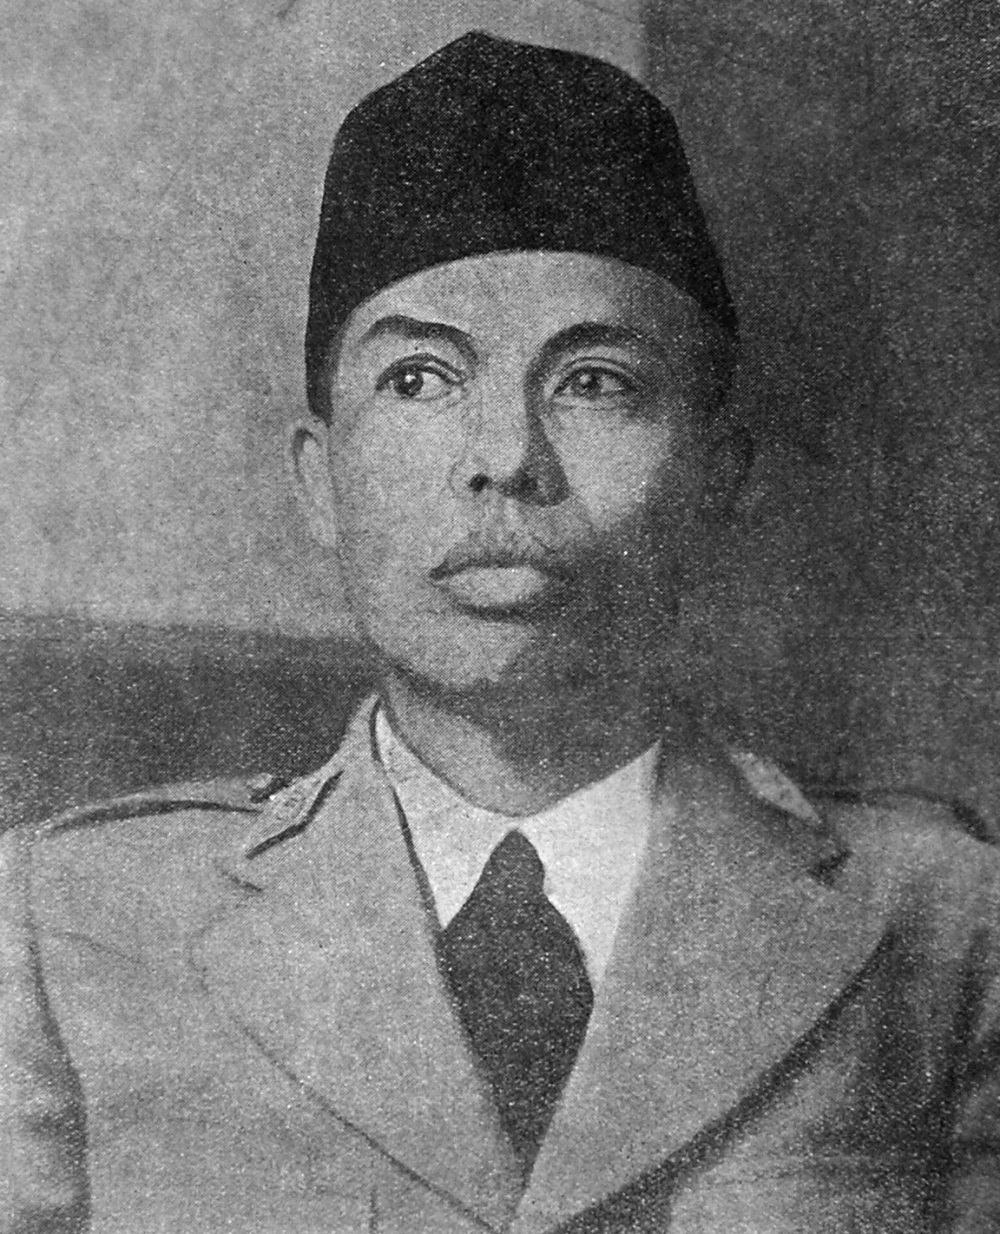 Biografi Jenderal Soedirman, Guru yang Menjadi Panglima Besar TNI